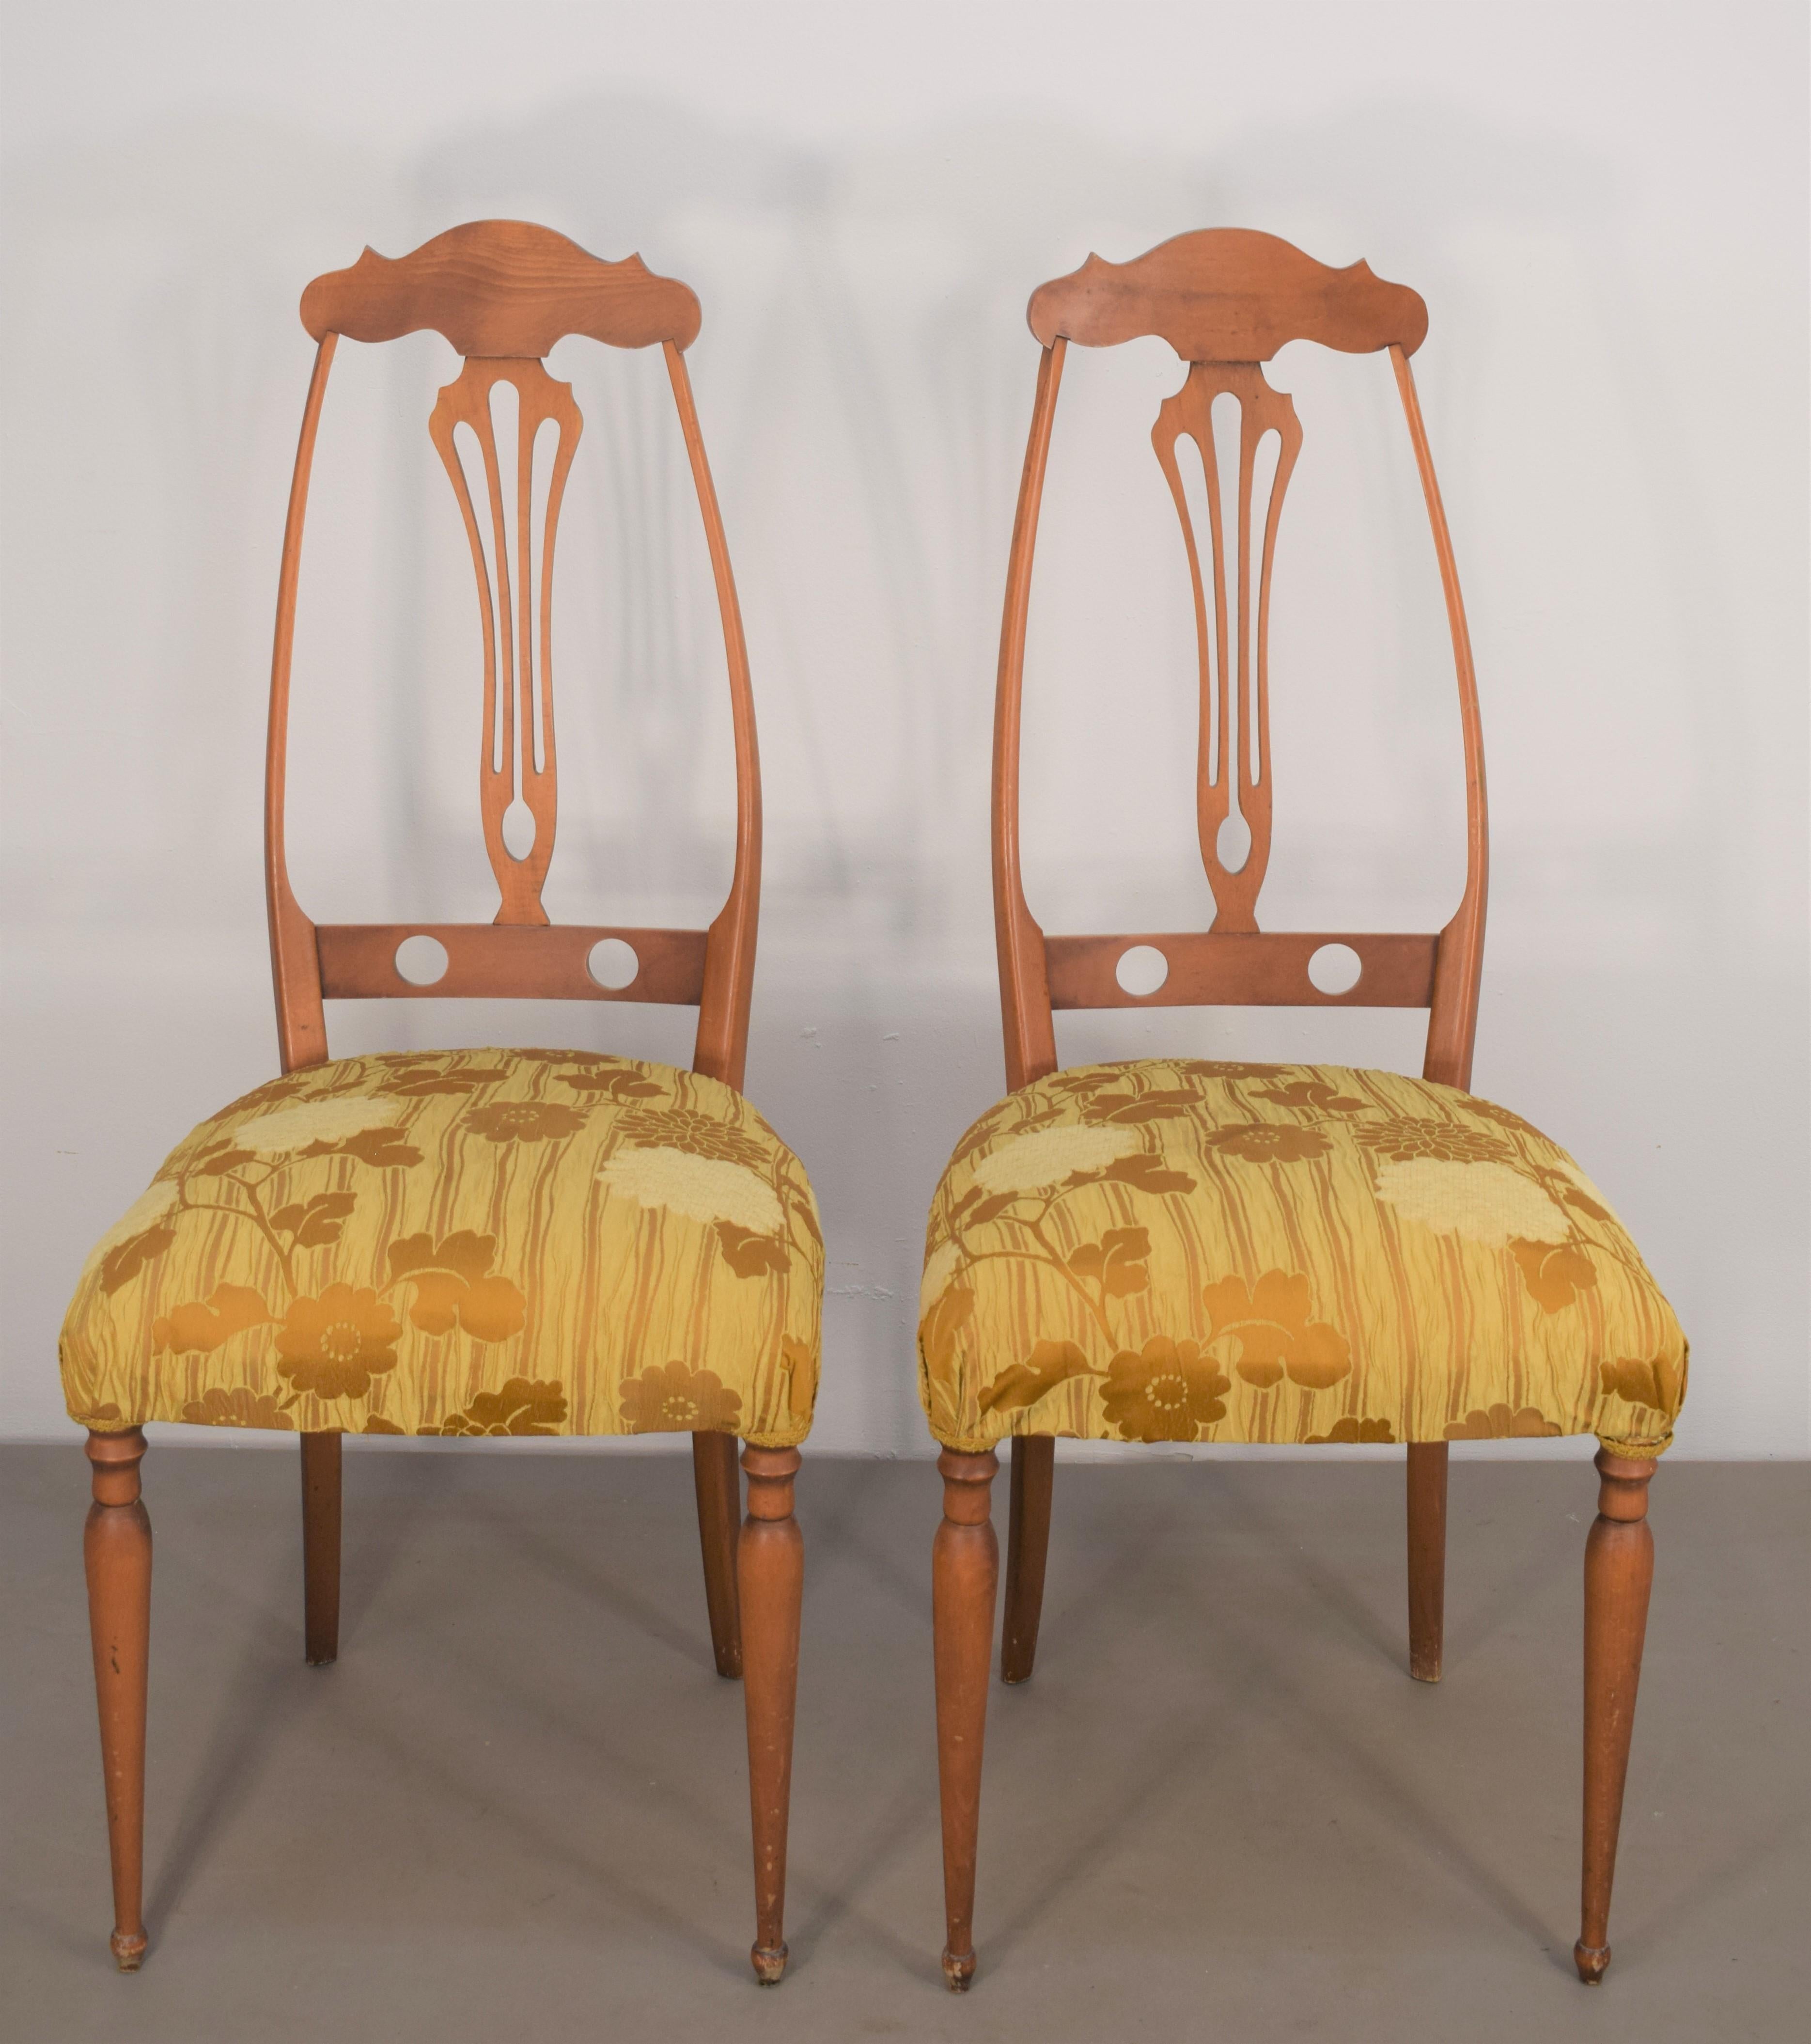 Ein Paar italienische Stühle von Pozzi & Verga, 1950er Jahre.

Abmessungen: H= 101 cm; B= 44 cm; T=42 cm; H-Sitz= 48 cm.